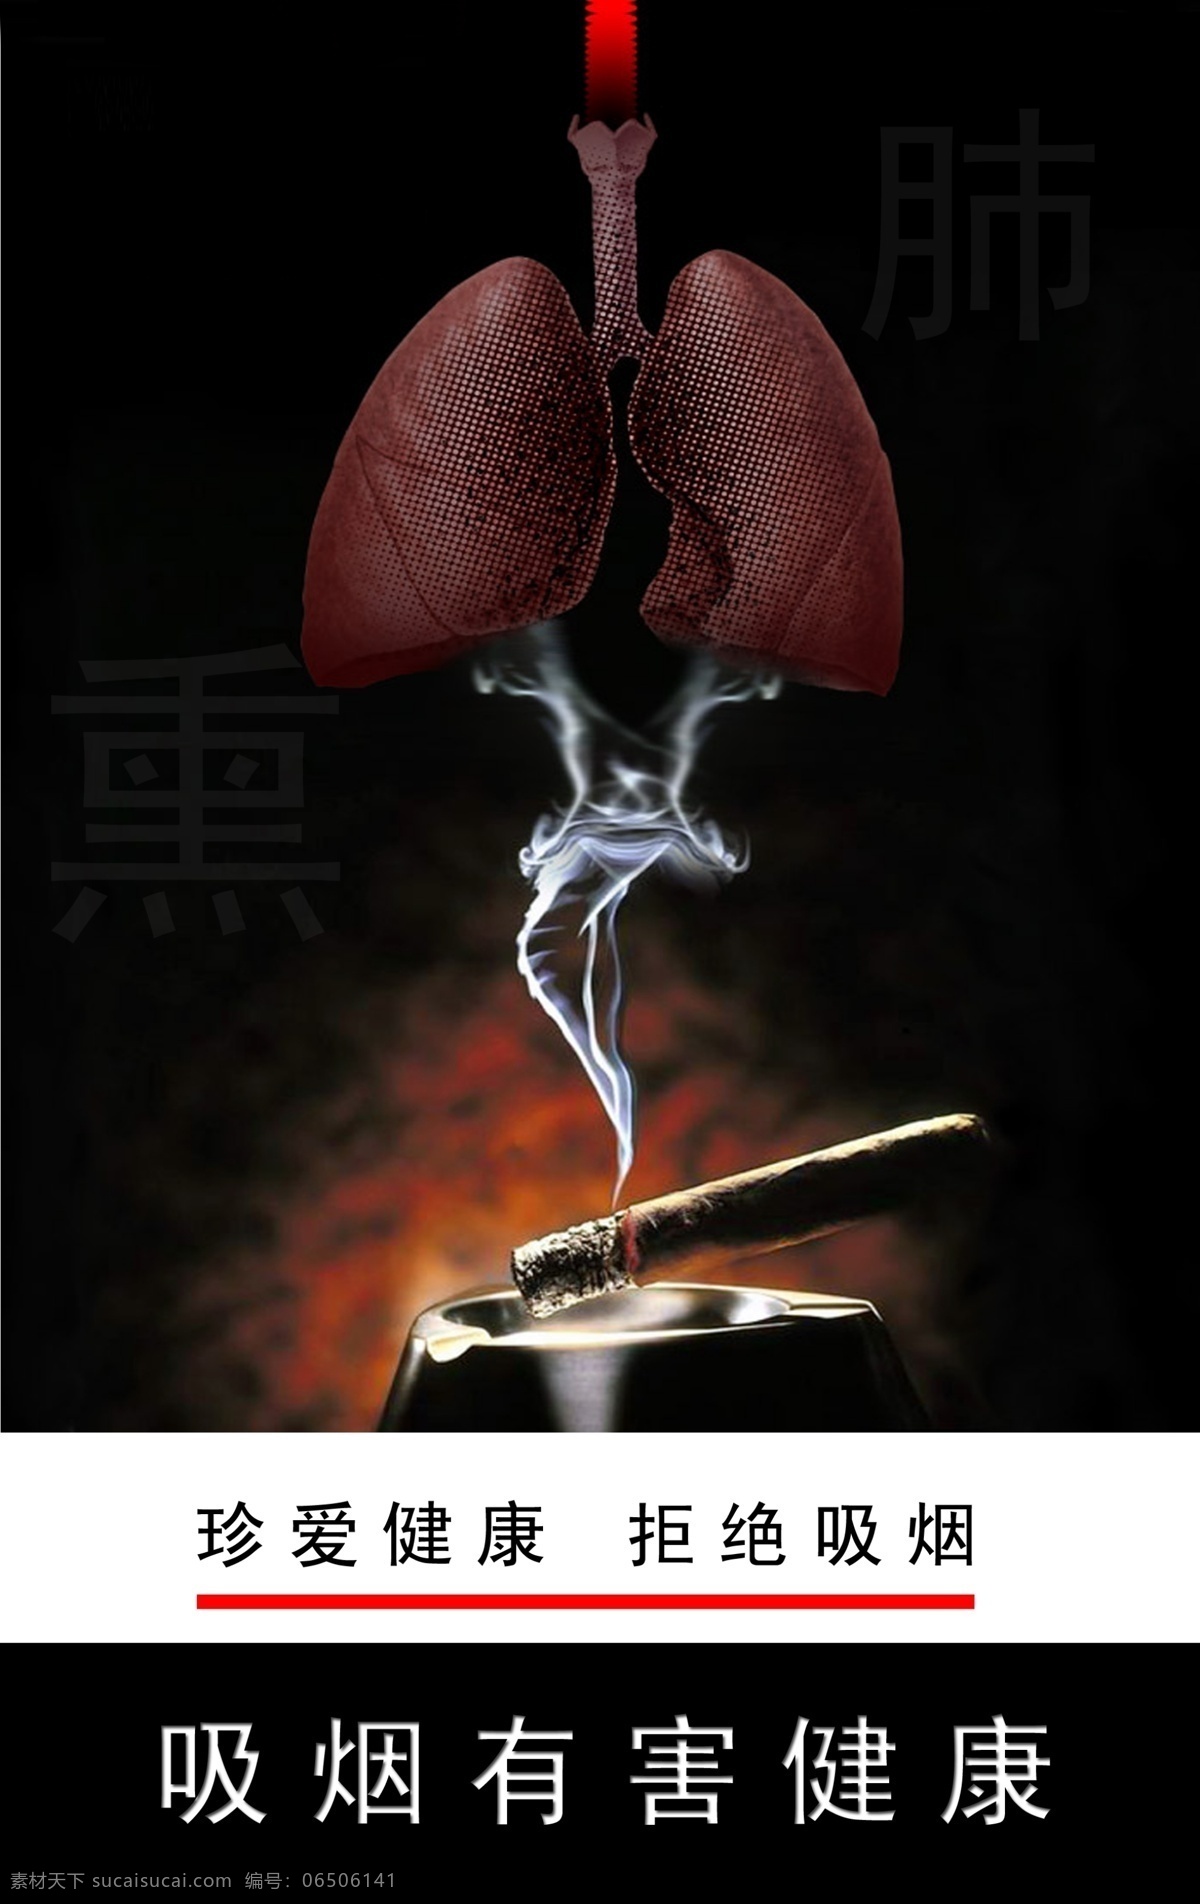 戒烟宣传海报 戒烟 禁烟 吸烟危害 烟肺 吸烟有害 戒烟海报 分层